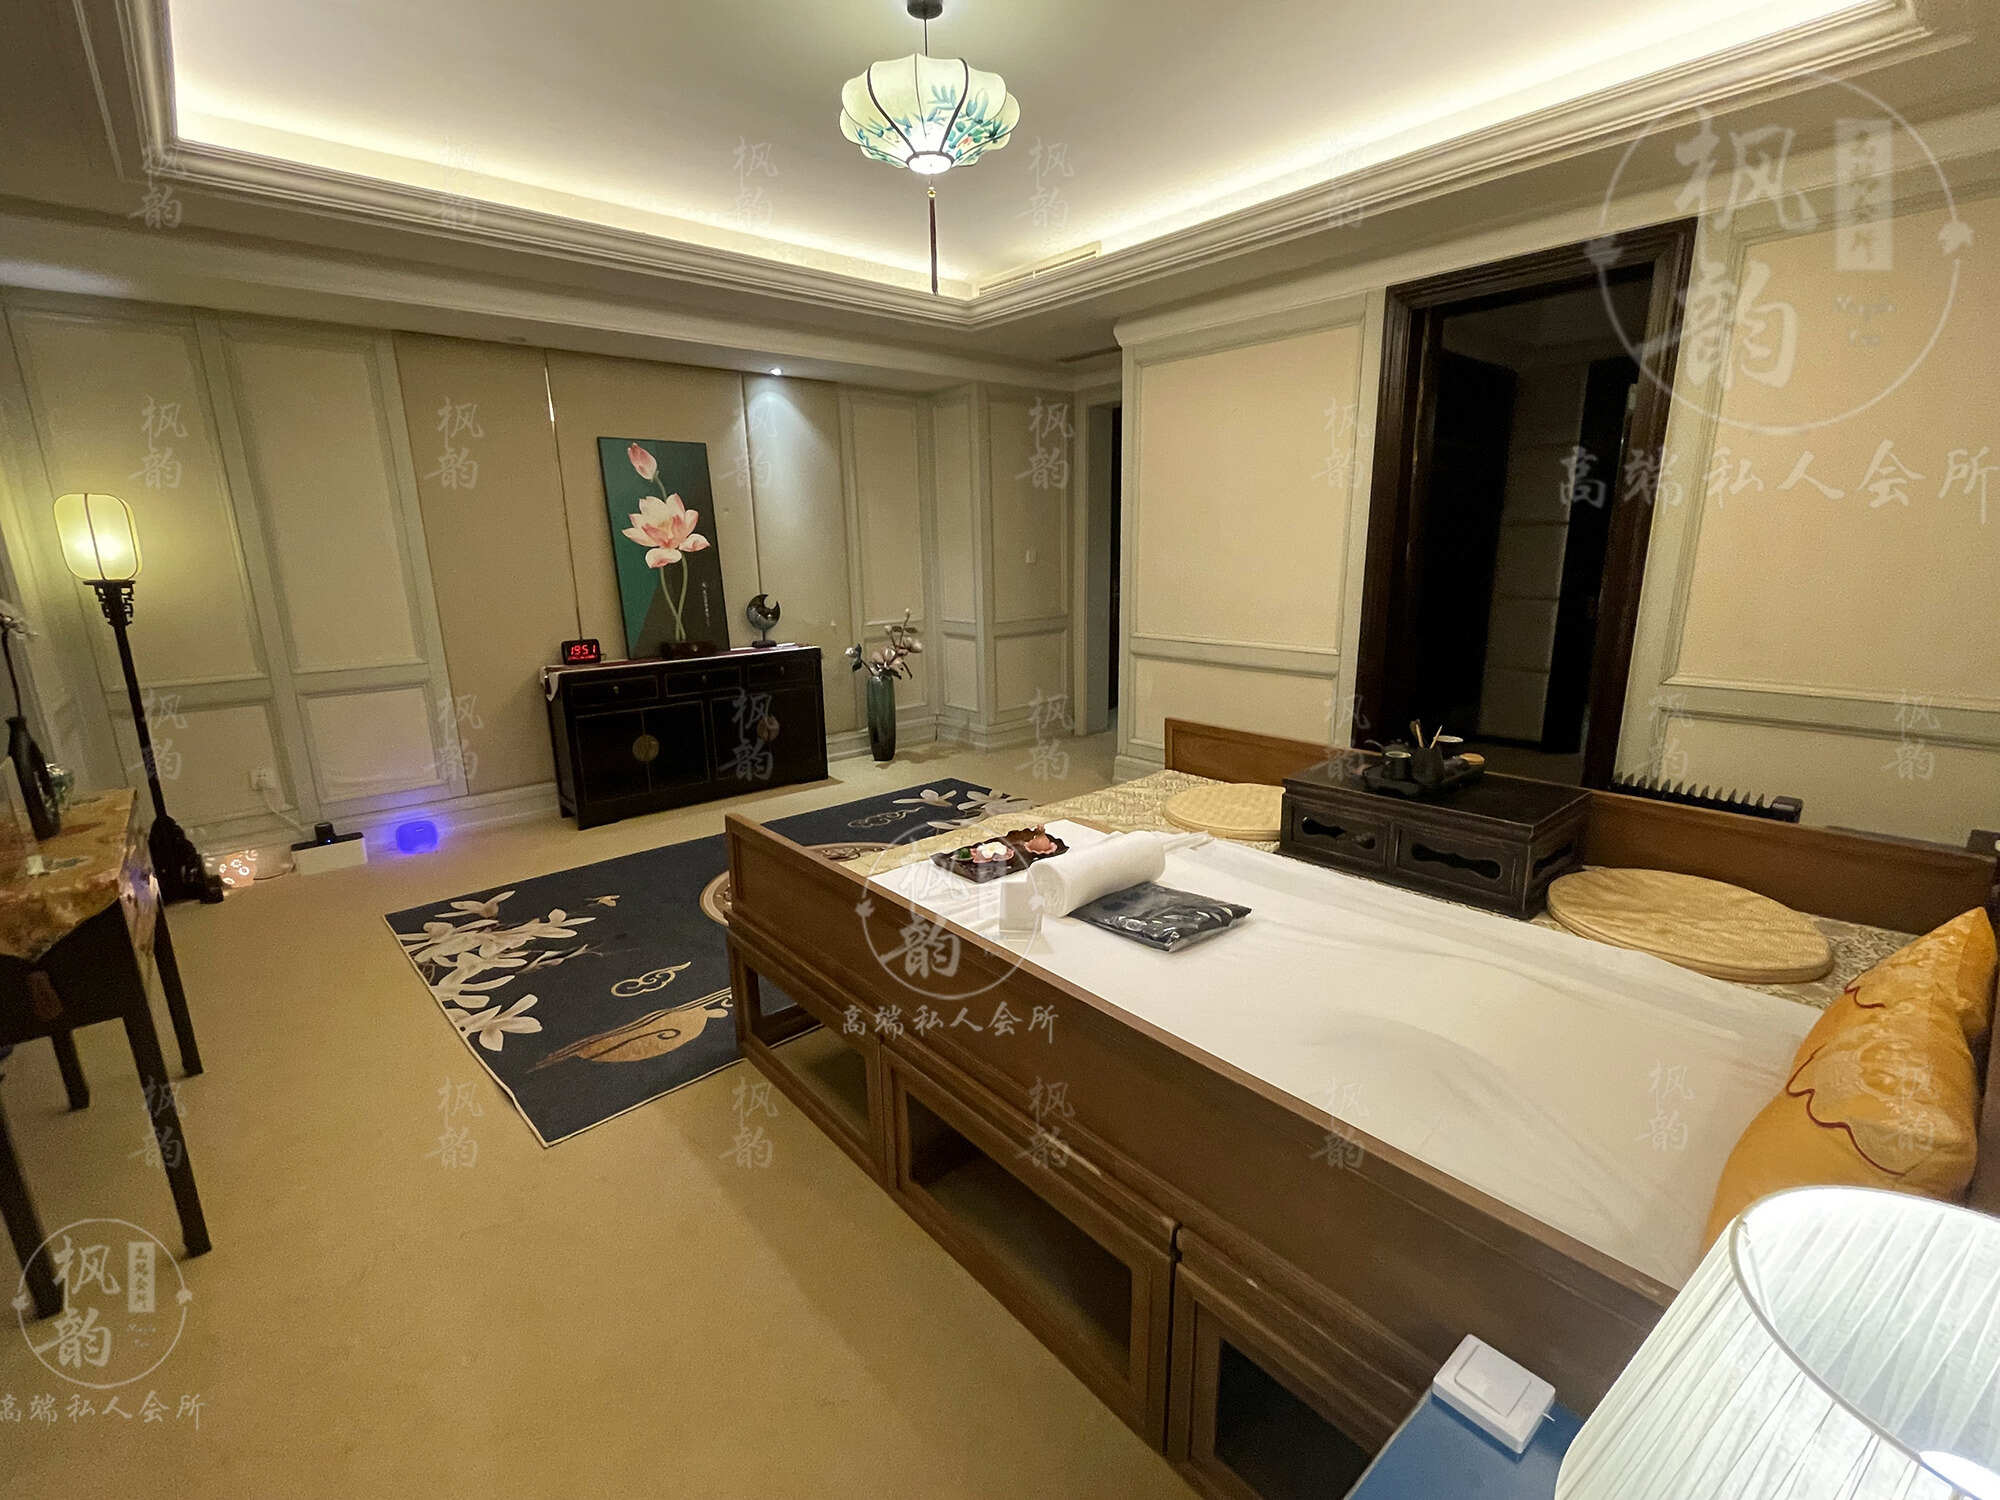 天津渔阳鼓楼人气优选沐足会馆房间也很干净，舒适的spa体验